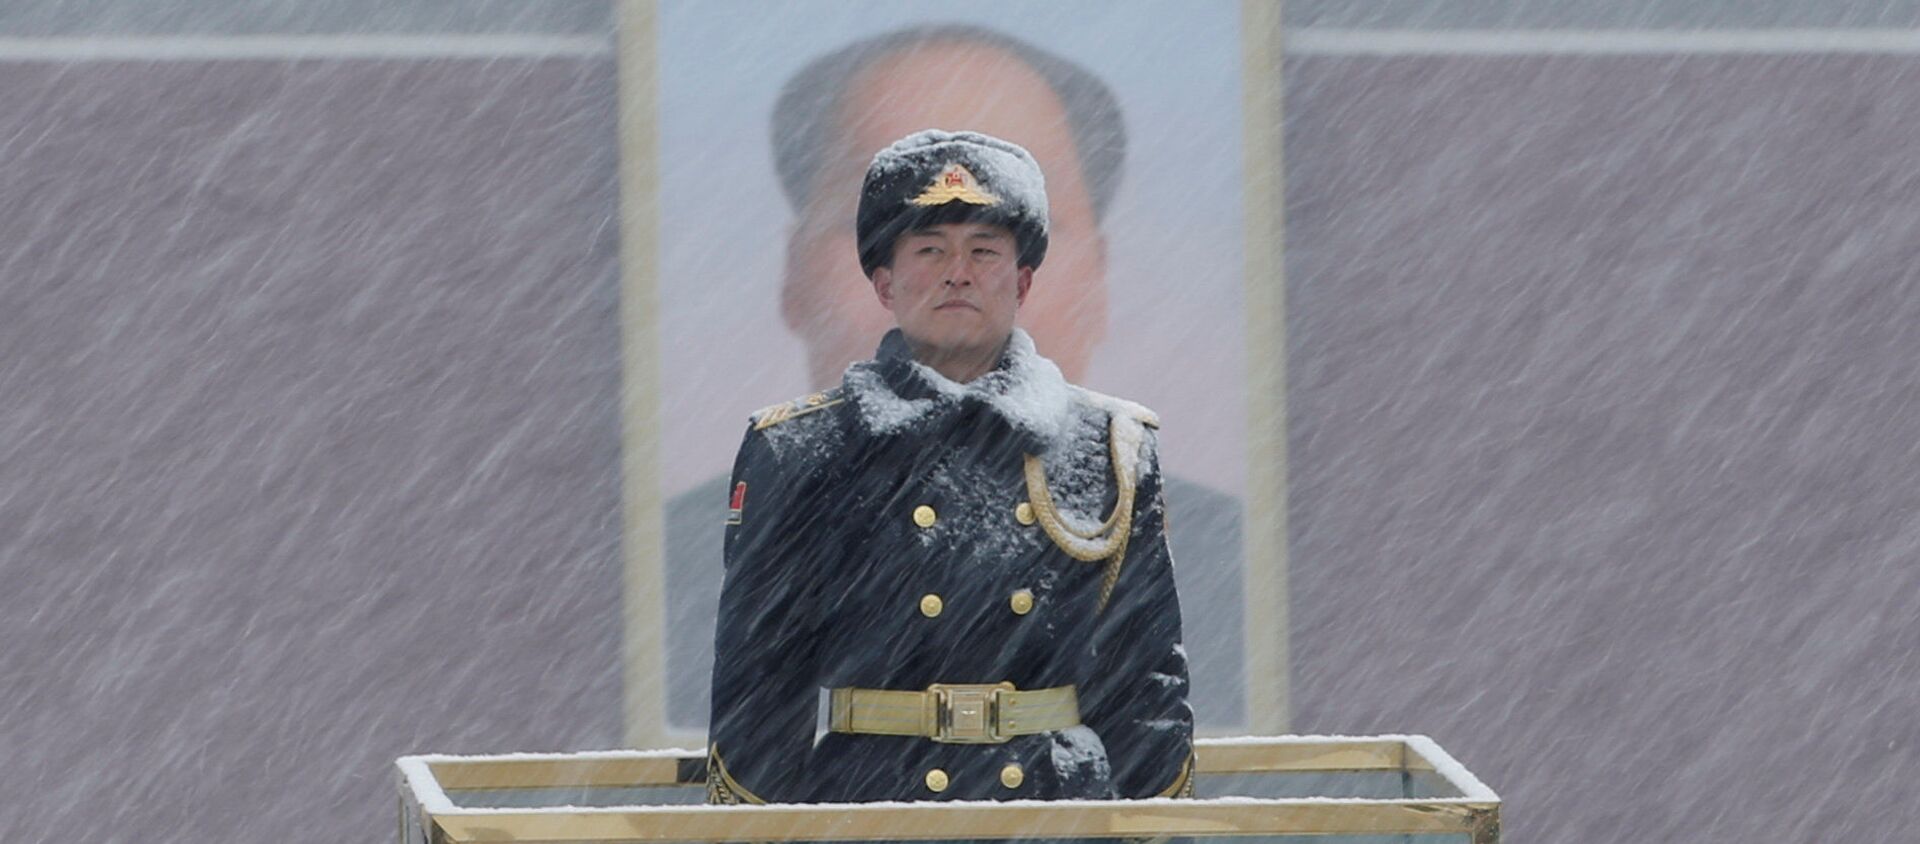 أحد أفراد الحرس العسكري يقف أمام صورة الرئيس الصيني الراحل ماو تسي تونغ أثناء تساقط الثلوج في ميدان تيانانمين في بكين بالصين في 12 فبراير/ شباط 2019 - سبوتنيك عربي, 1920, 28.03.2021